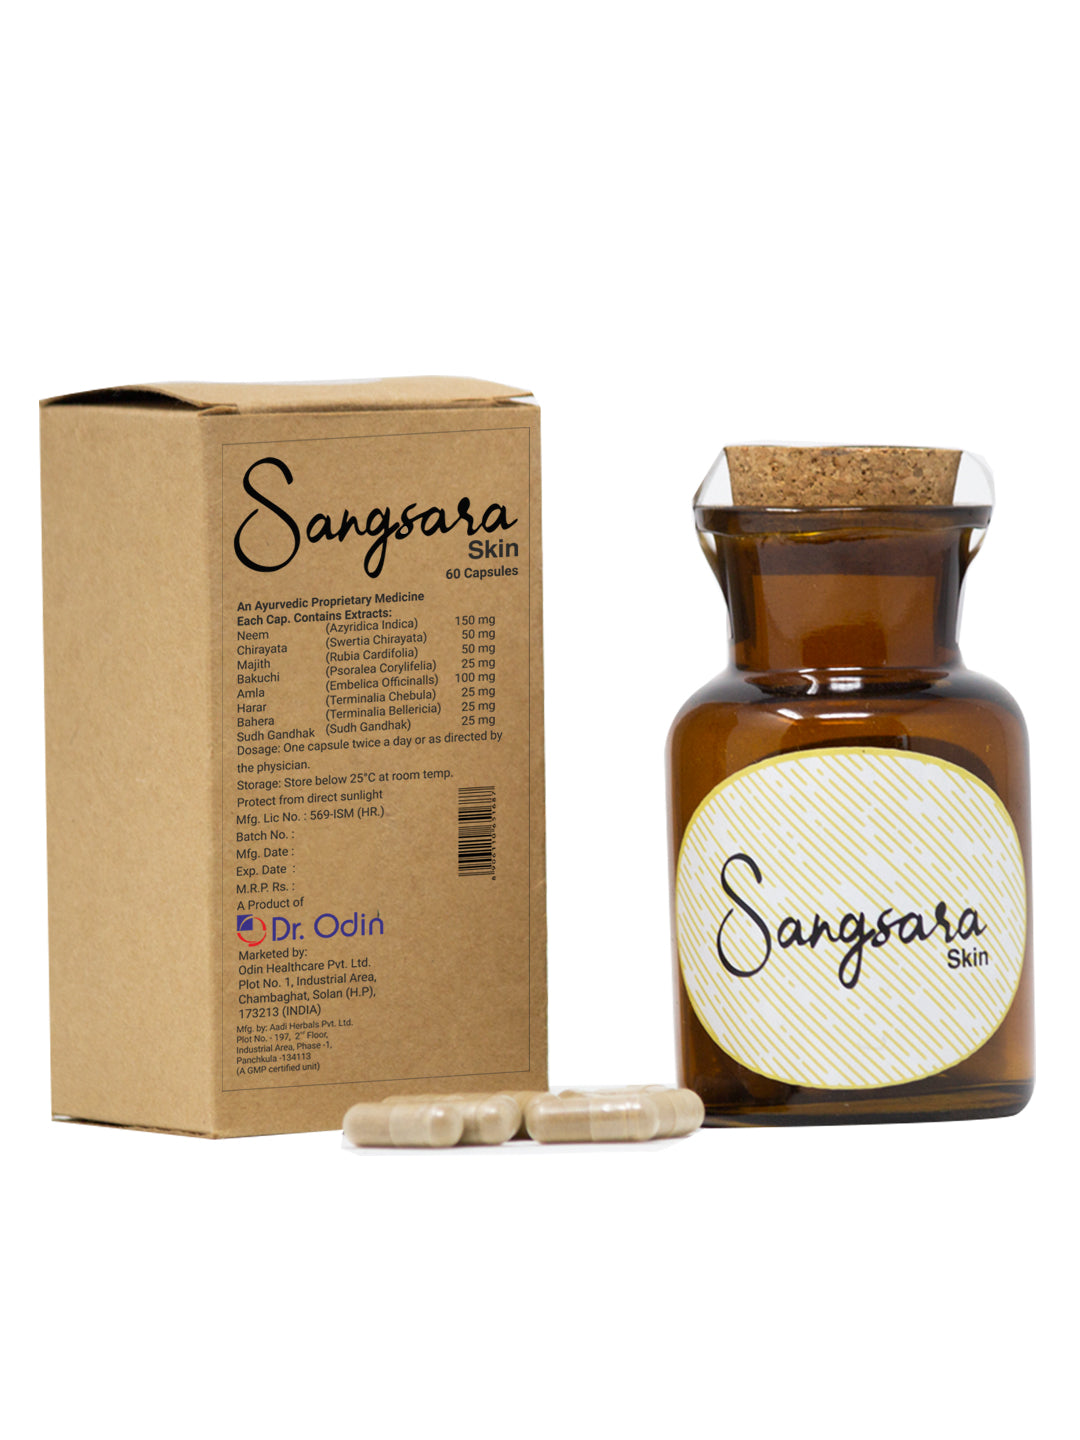 Sangsara Skin Capsules - 60 Count